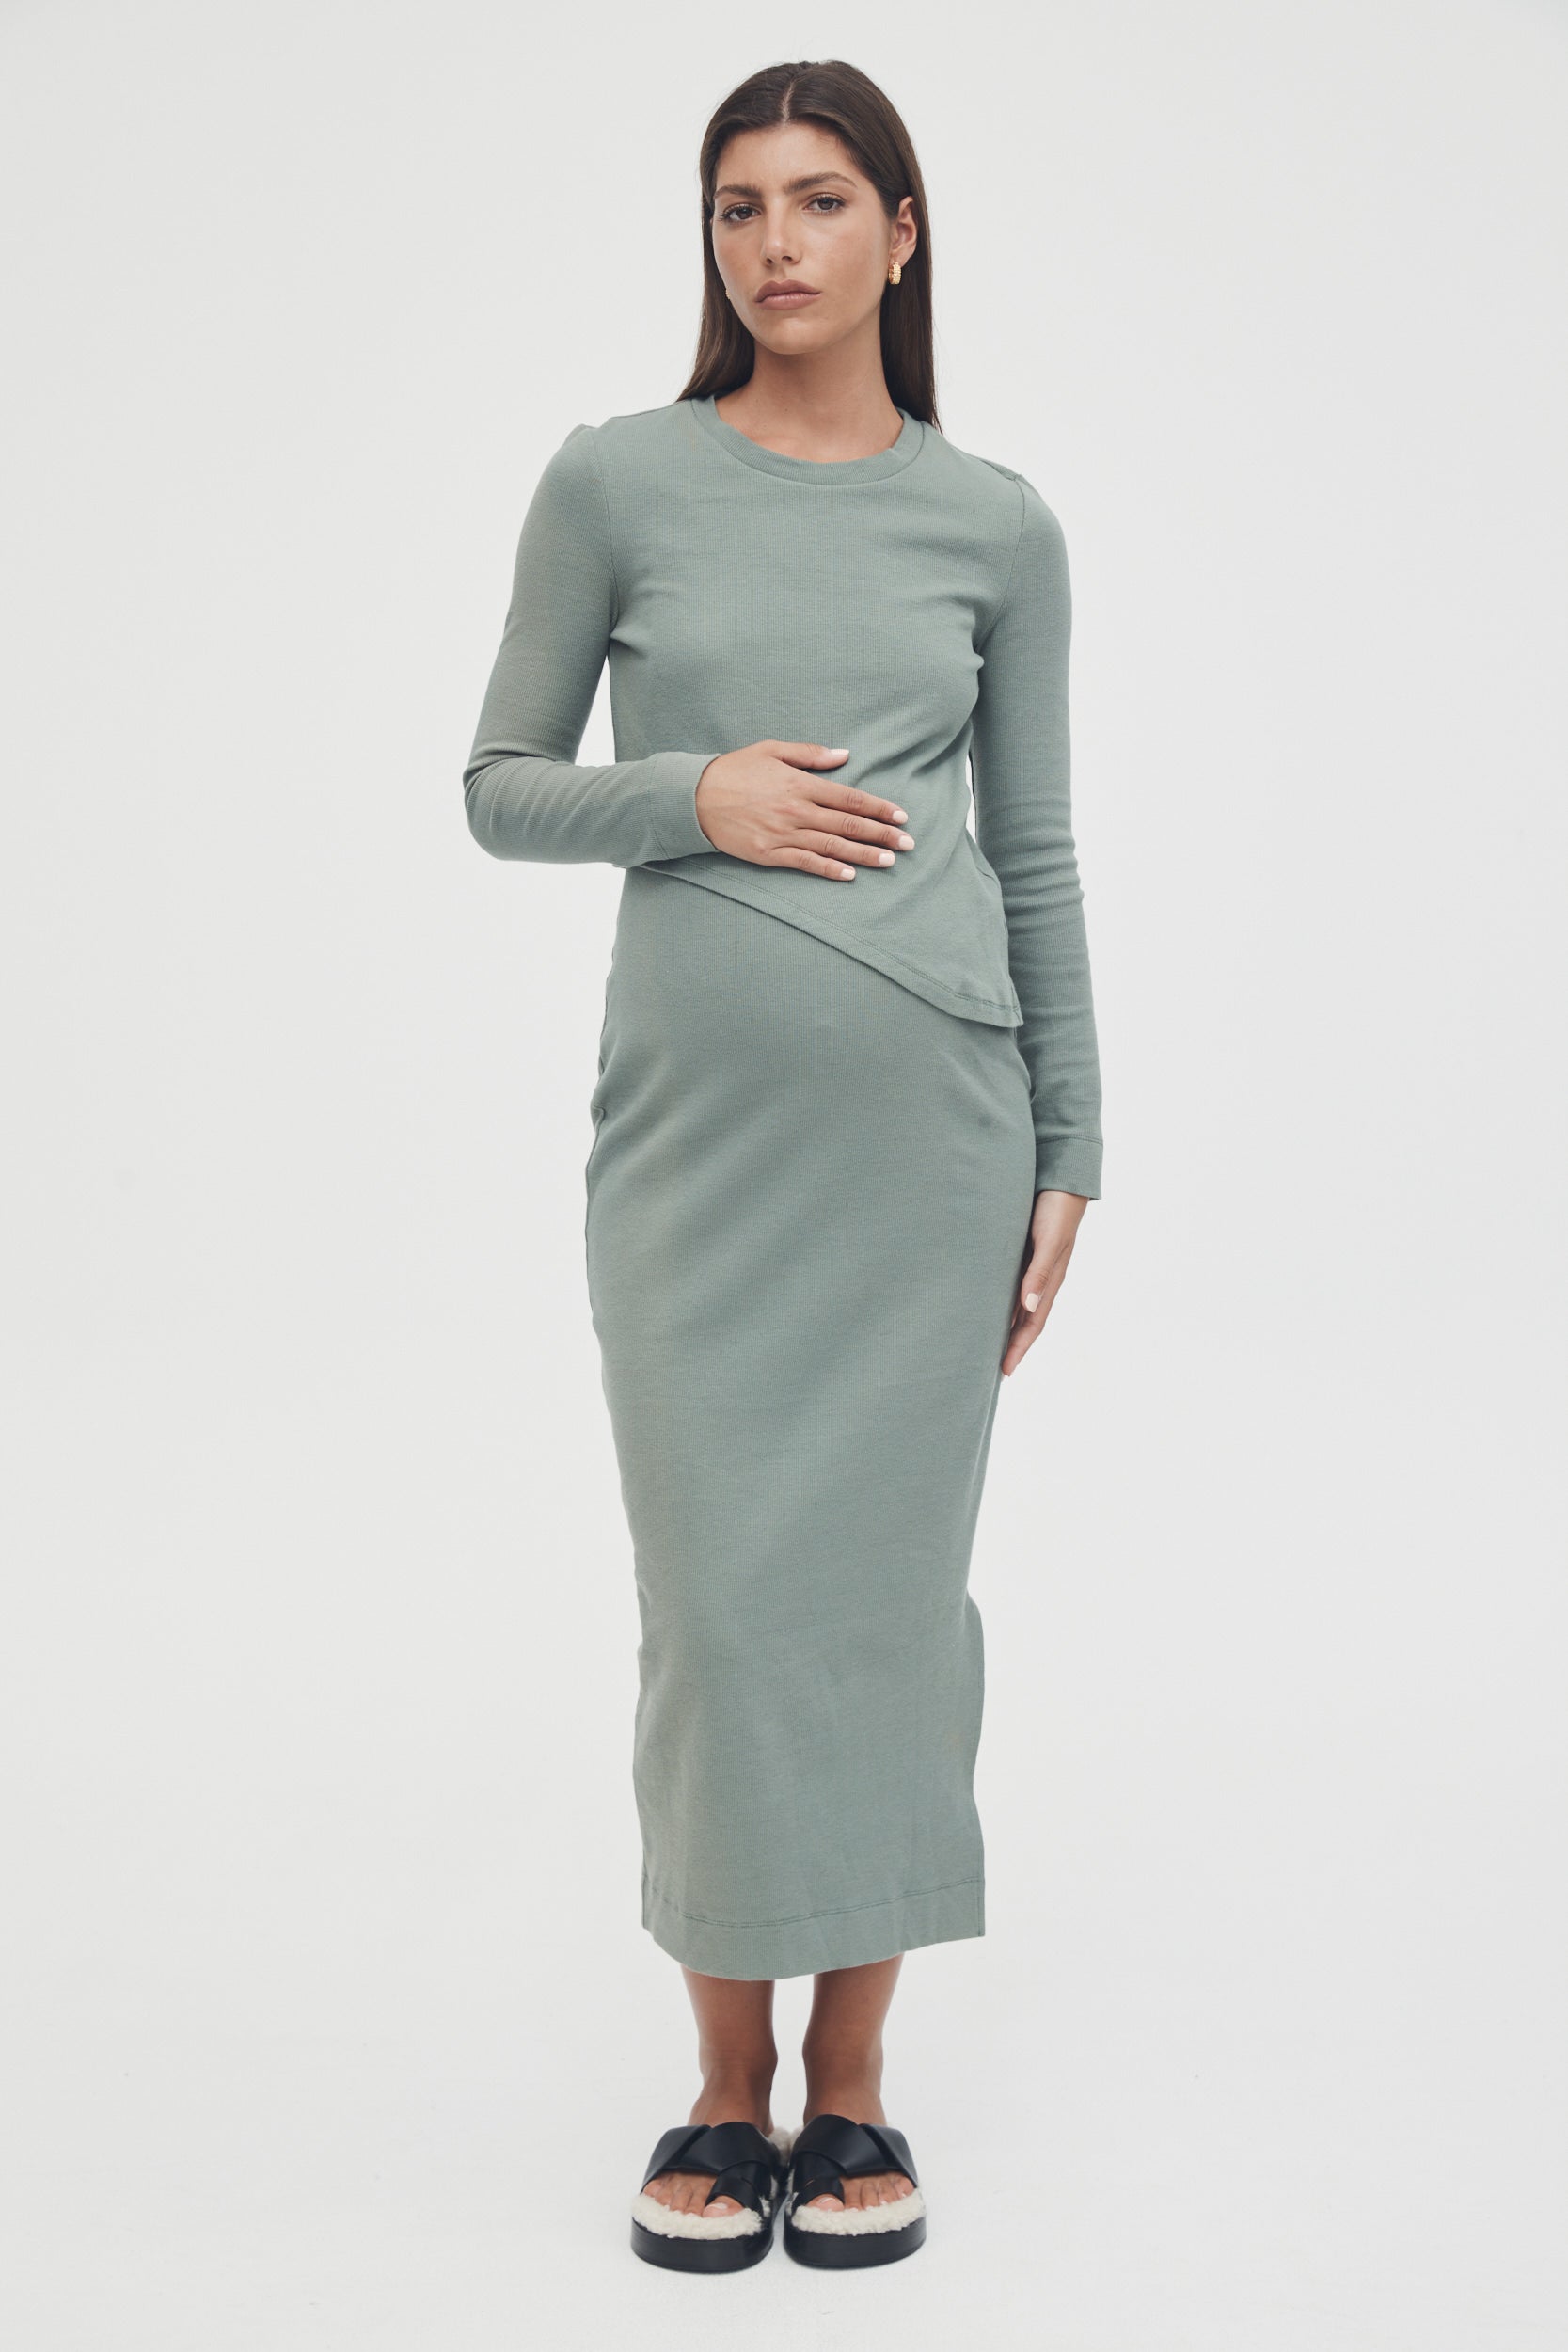 Stretchy Rib Maternity Dress (Olive) 1